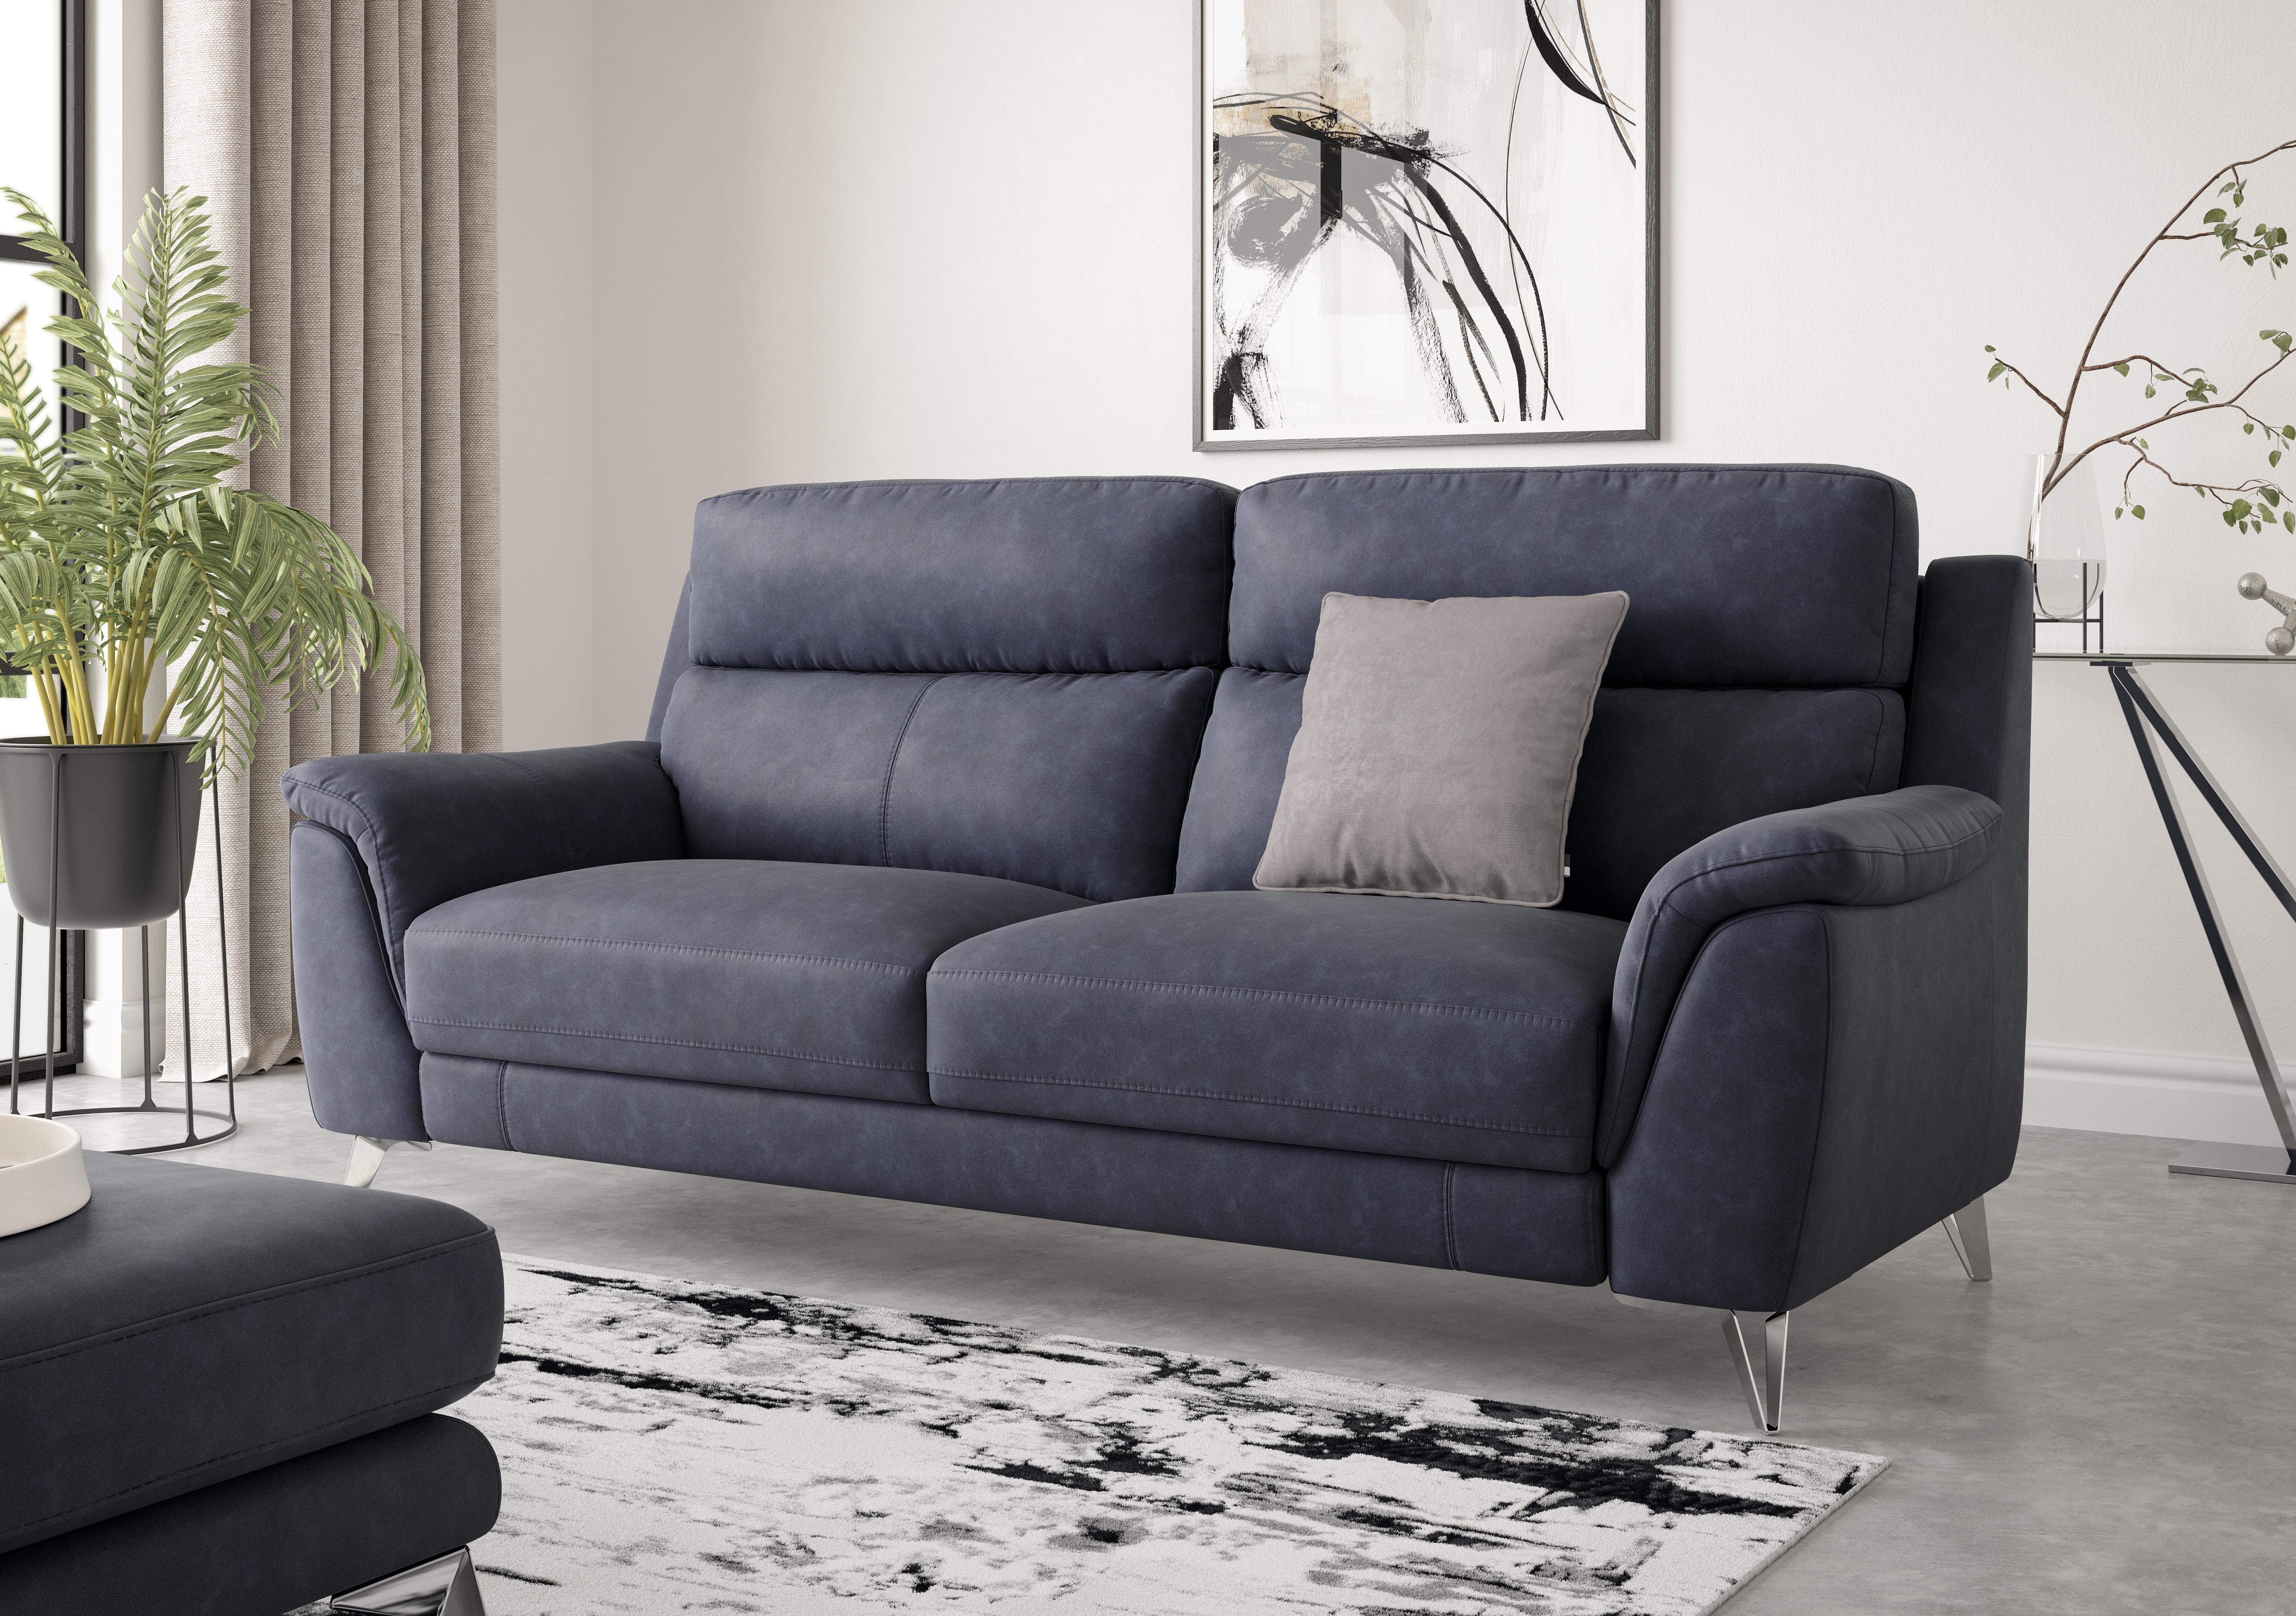 Contempo 3 Seater Fabric Sofa in  on Furniture Village